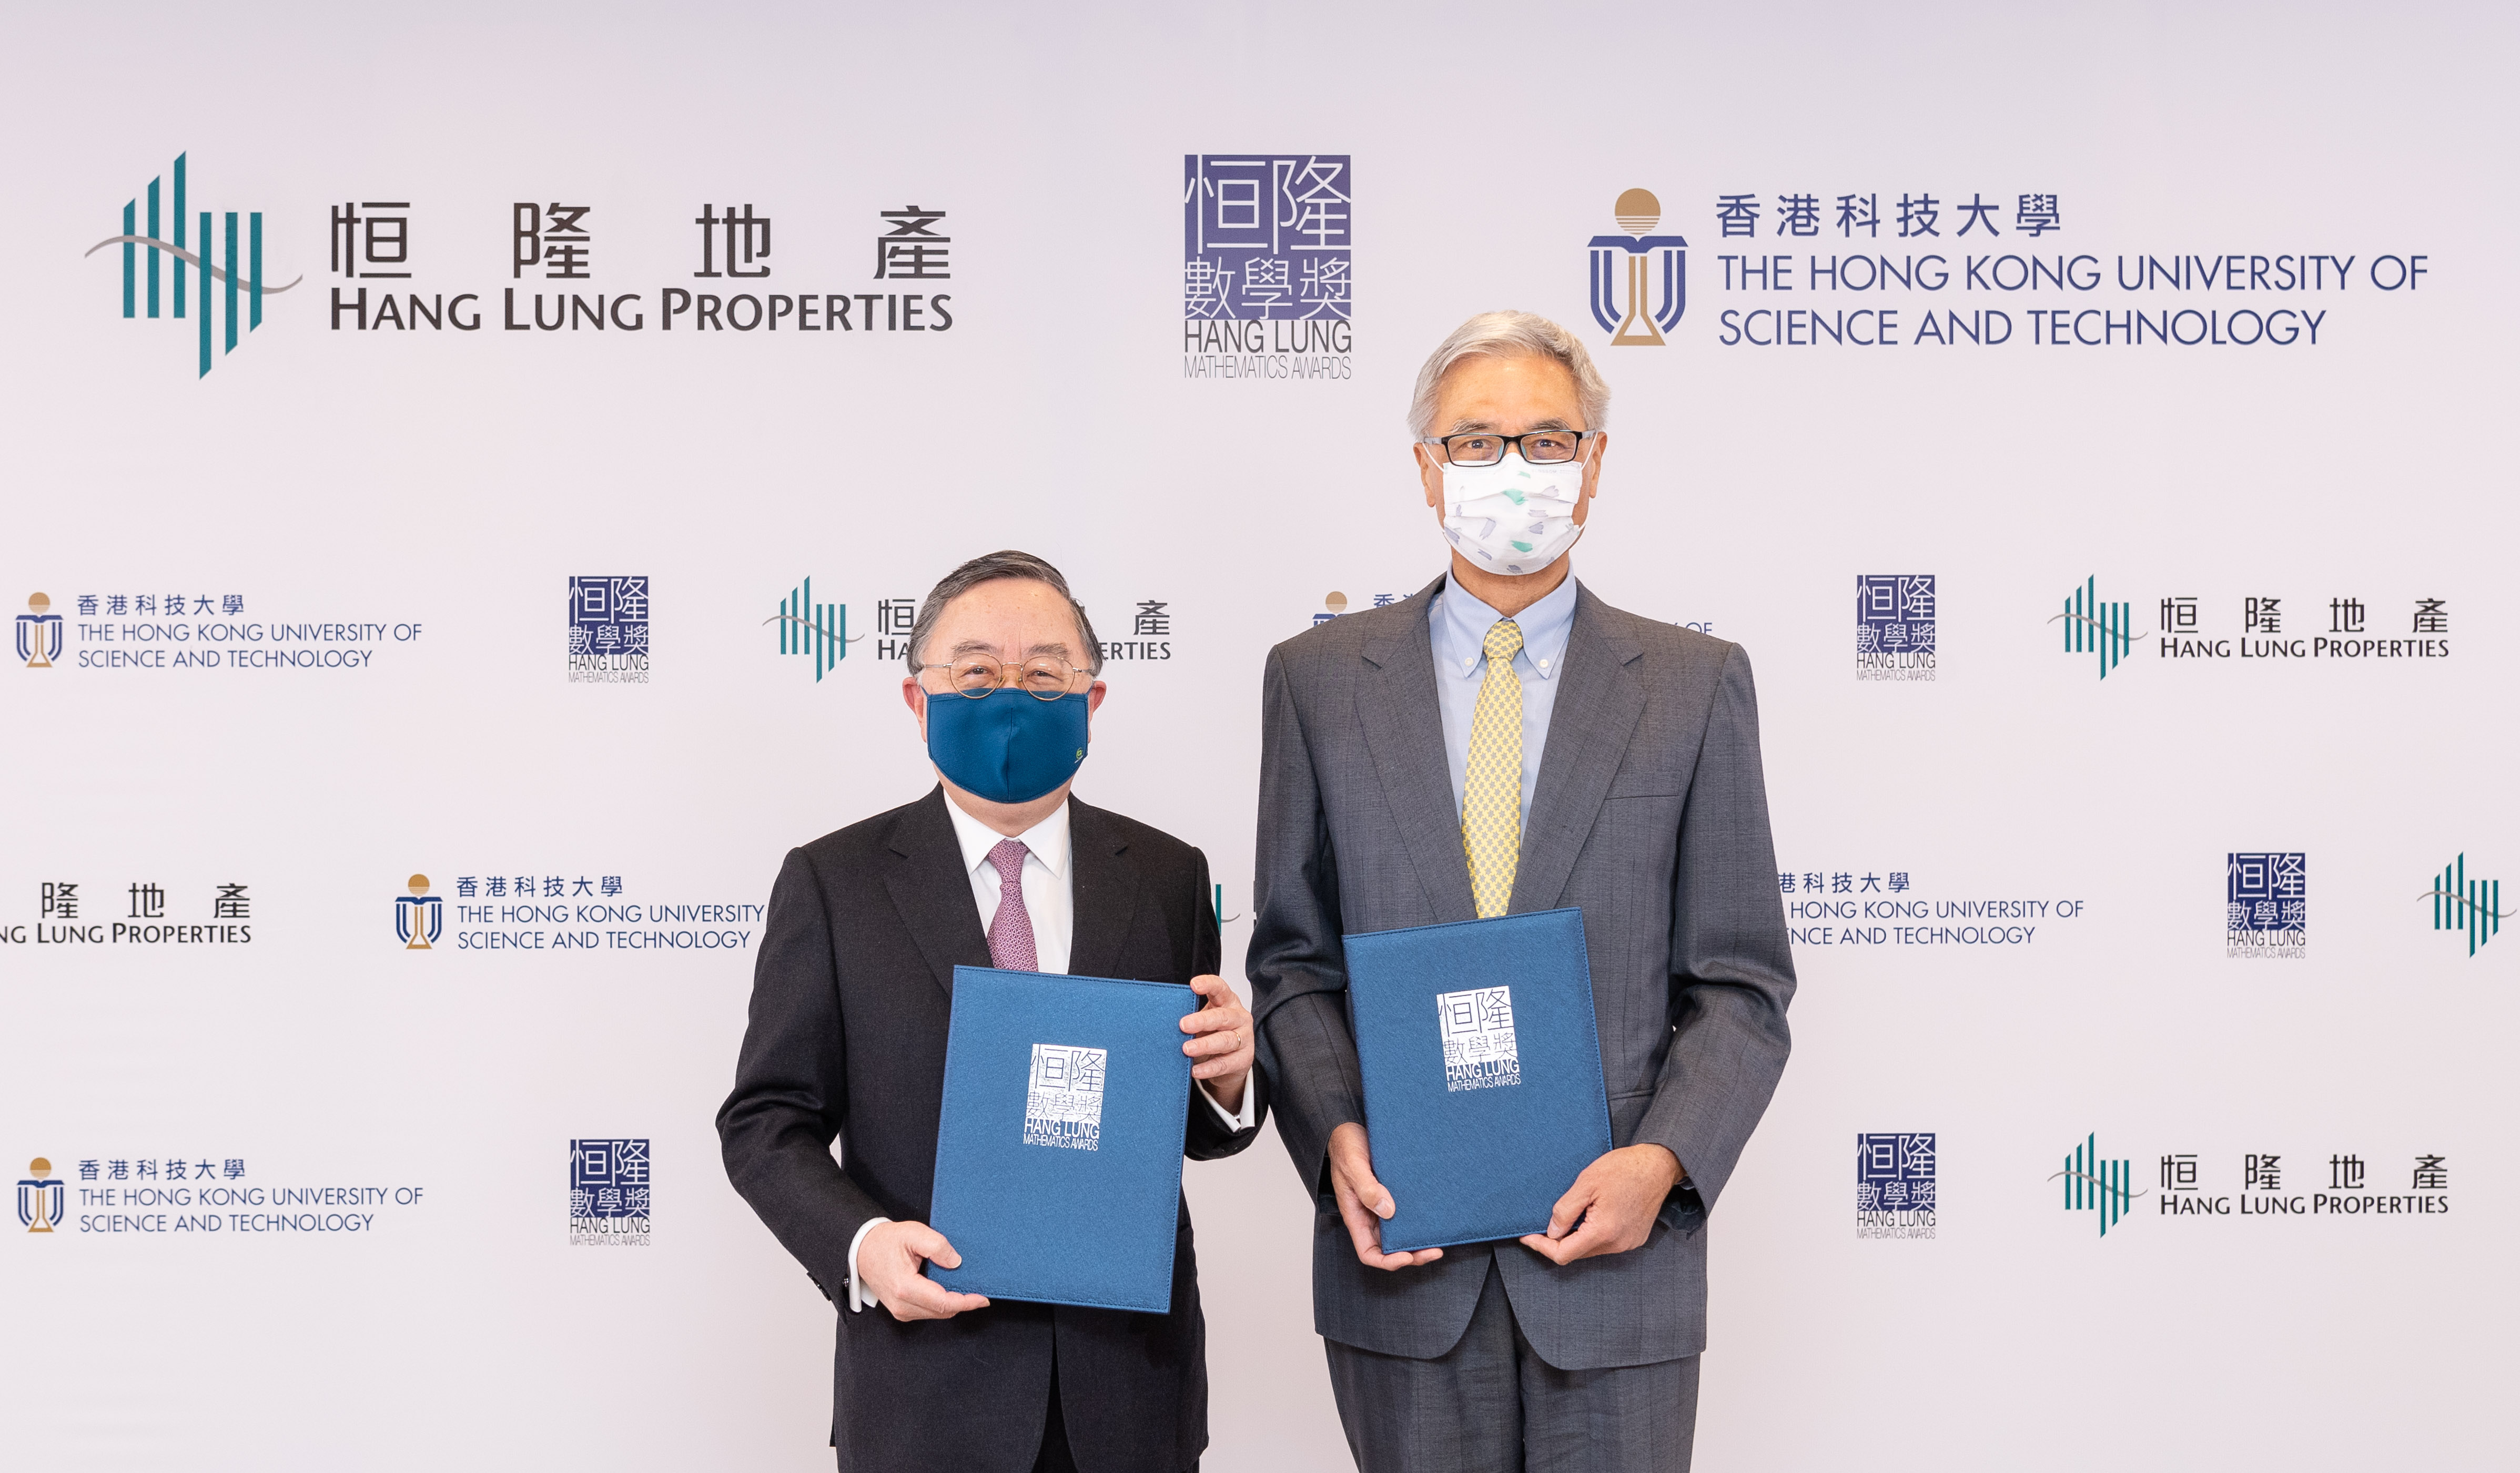 恒隆地產董事長陳啟宗先生(左)及香港科技大學校長史維教授(右)簽署合作協議，宣佈攜手舉辦恒隆數學獎培育本地年輕數理人才